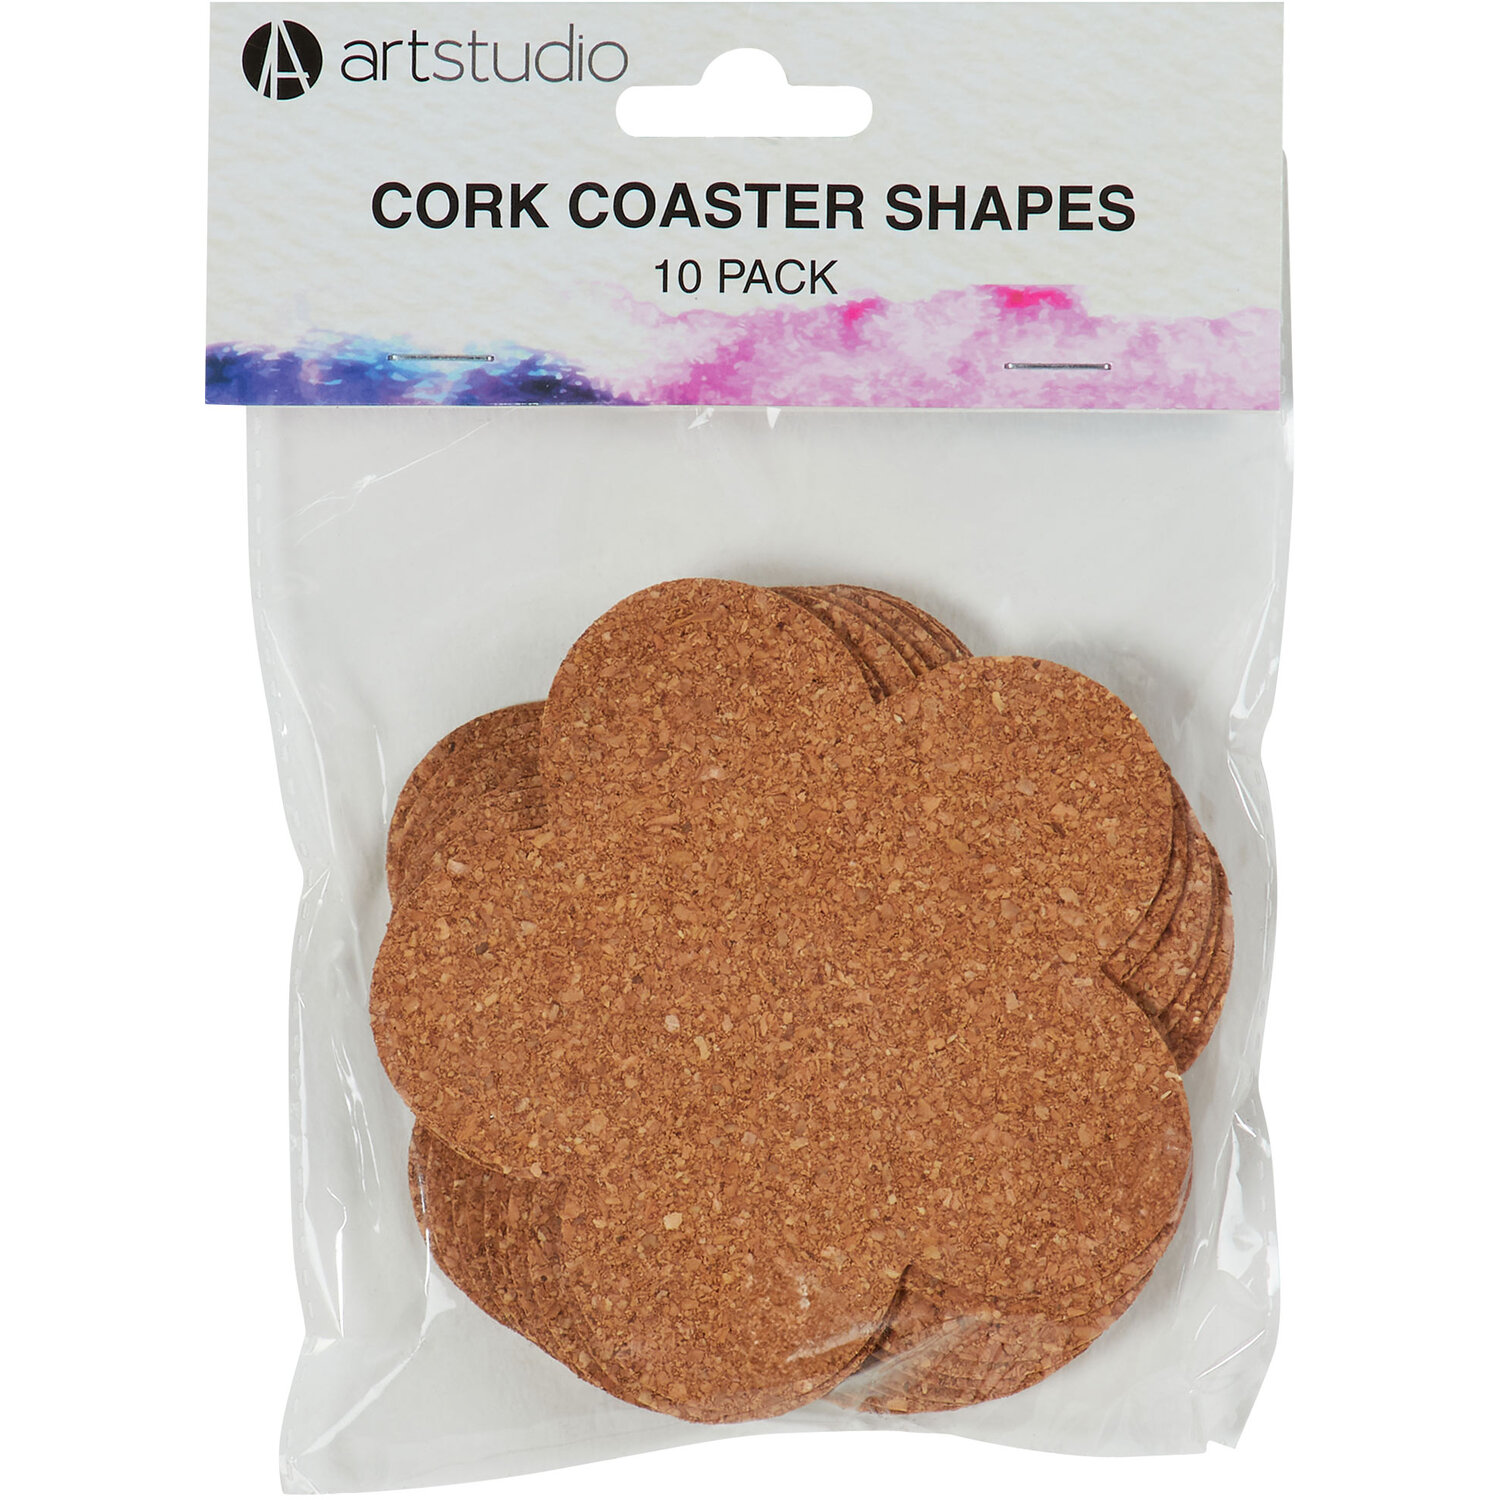 Cork Coaster Shapes Image 4